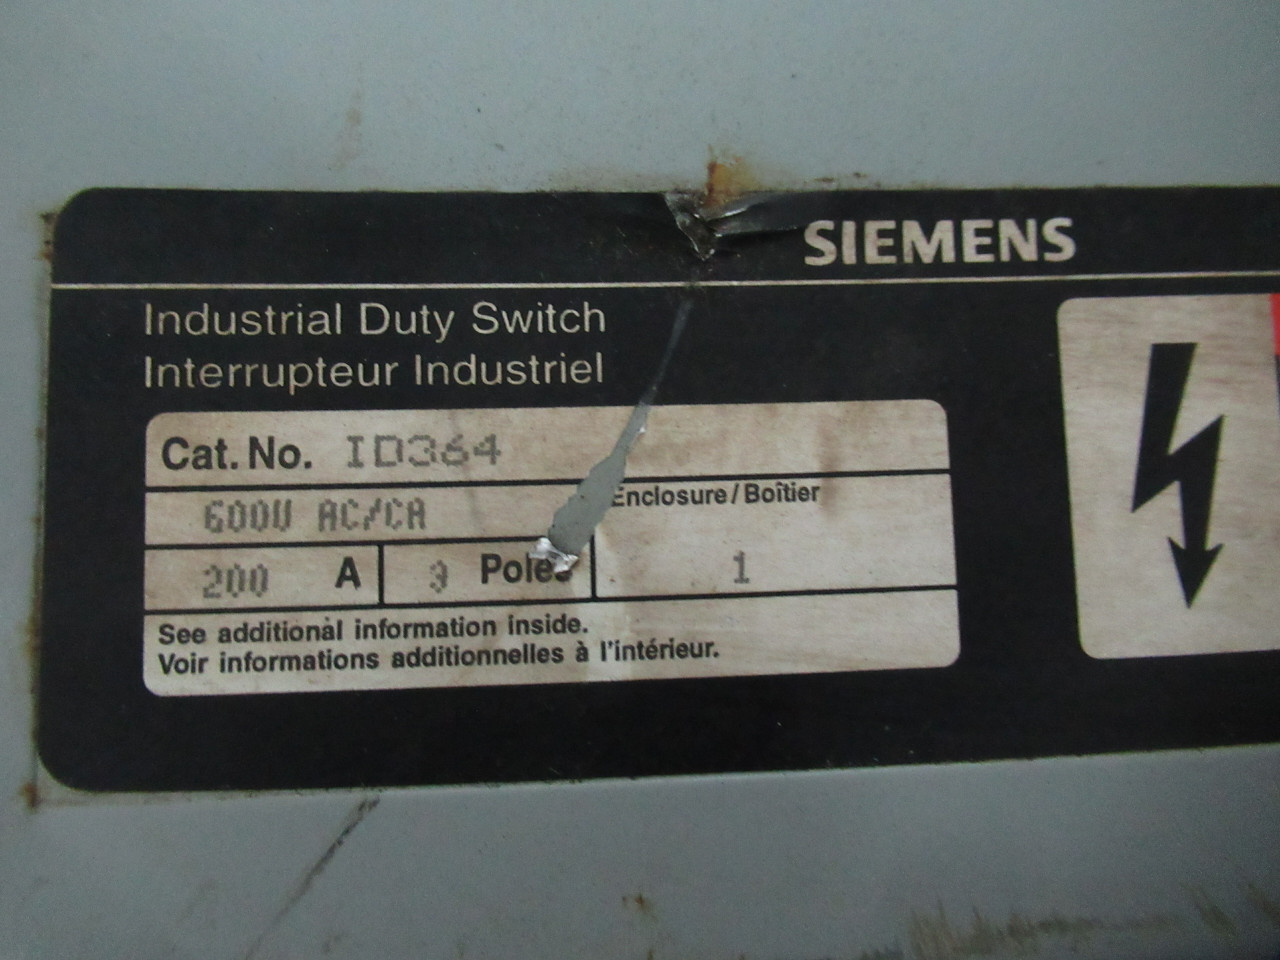 Siemens ID364 Industrial Duty Switch 200A 600VAC/CA 3P *Rust* USED